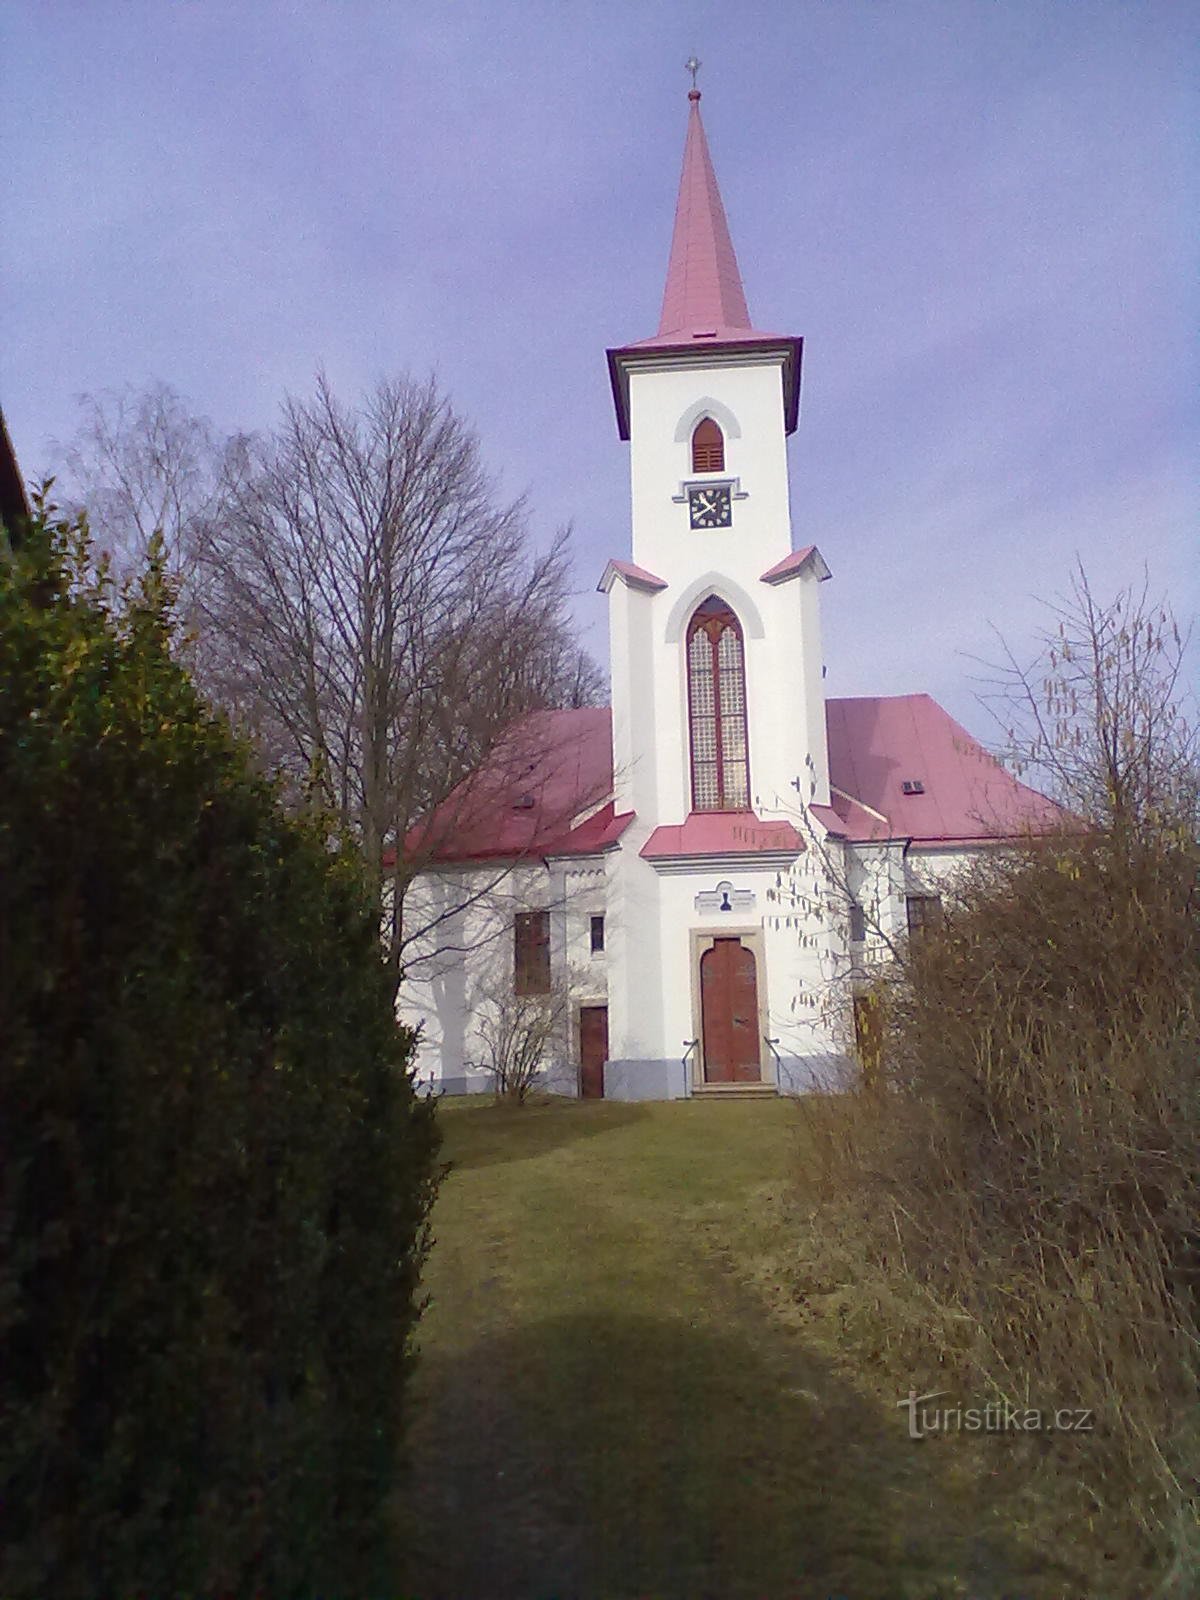 2. Église évangélique de Moravč de 1785.